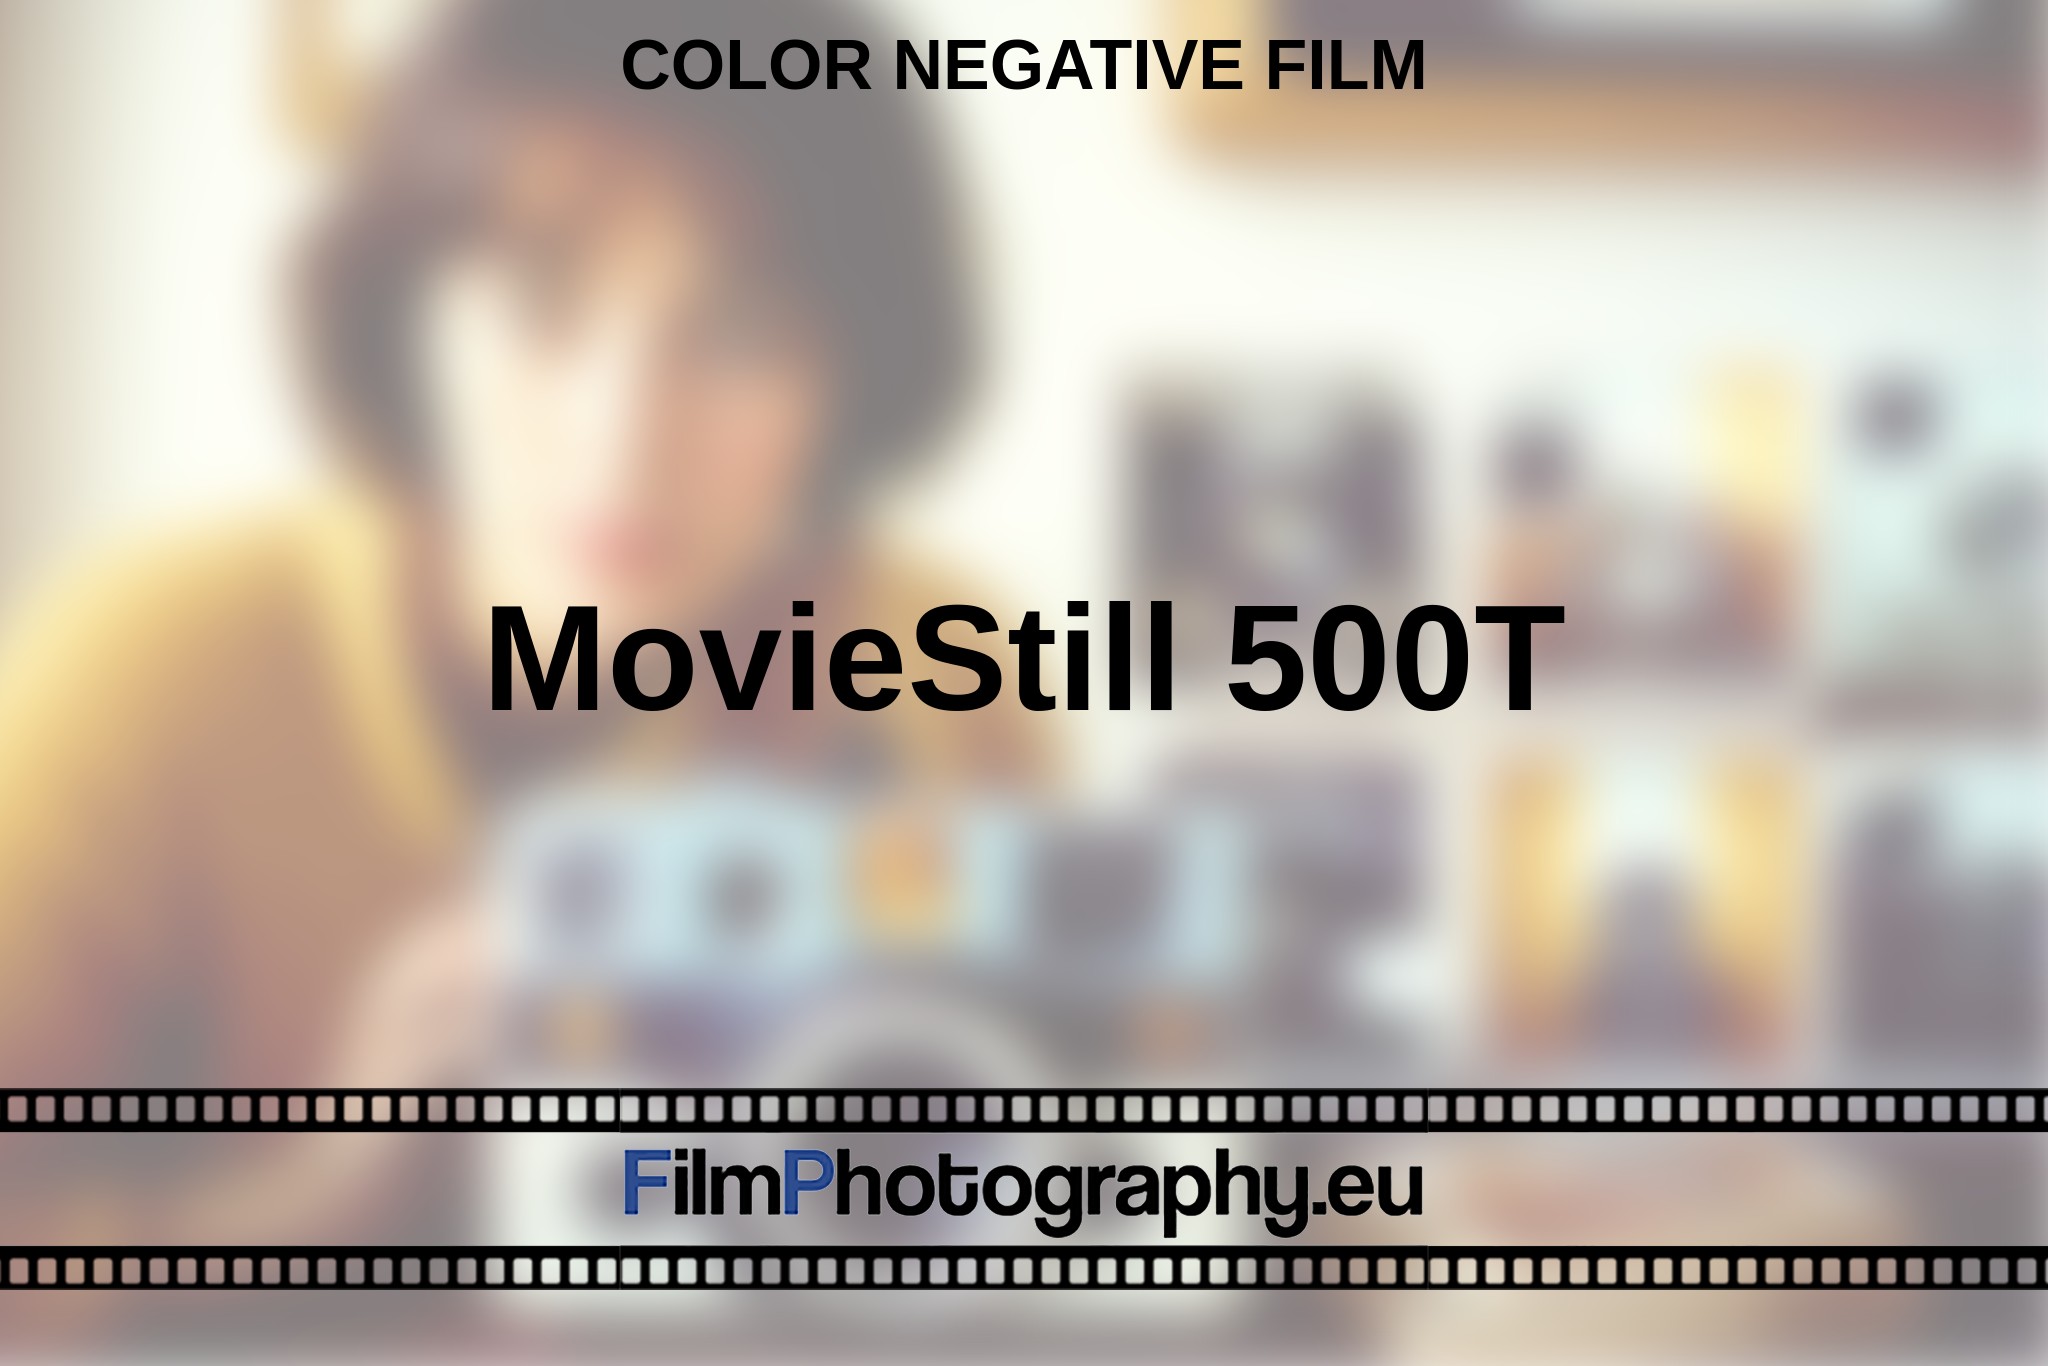 moviestill-500t-color-negative-film-en-bnv.jpg